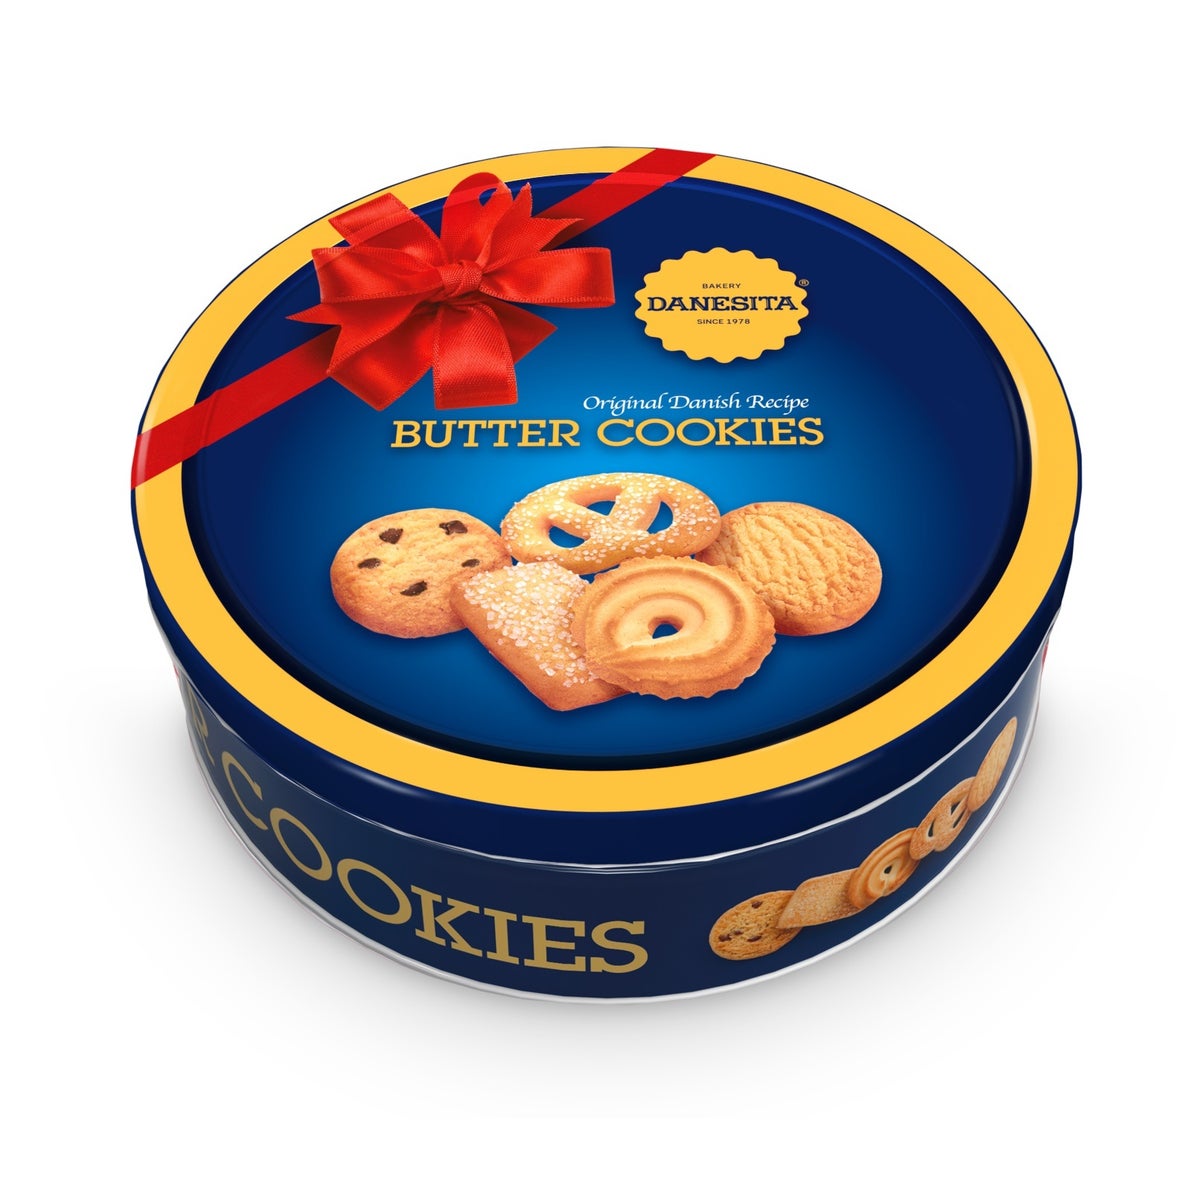 Butter Cookies Tin "DANESTA" 908g * 6